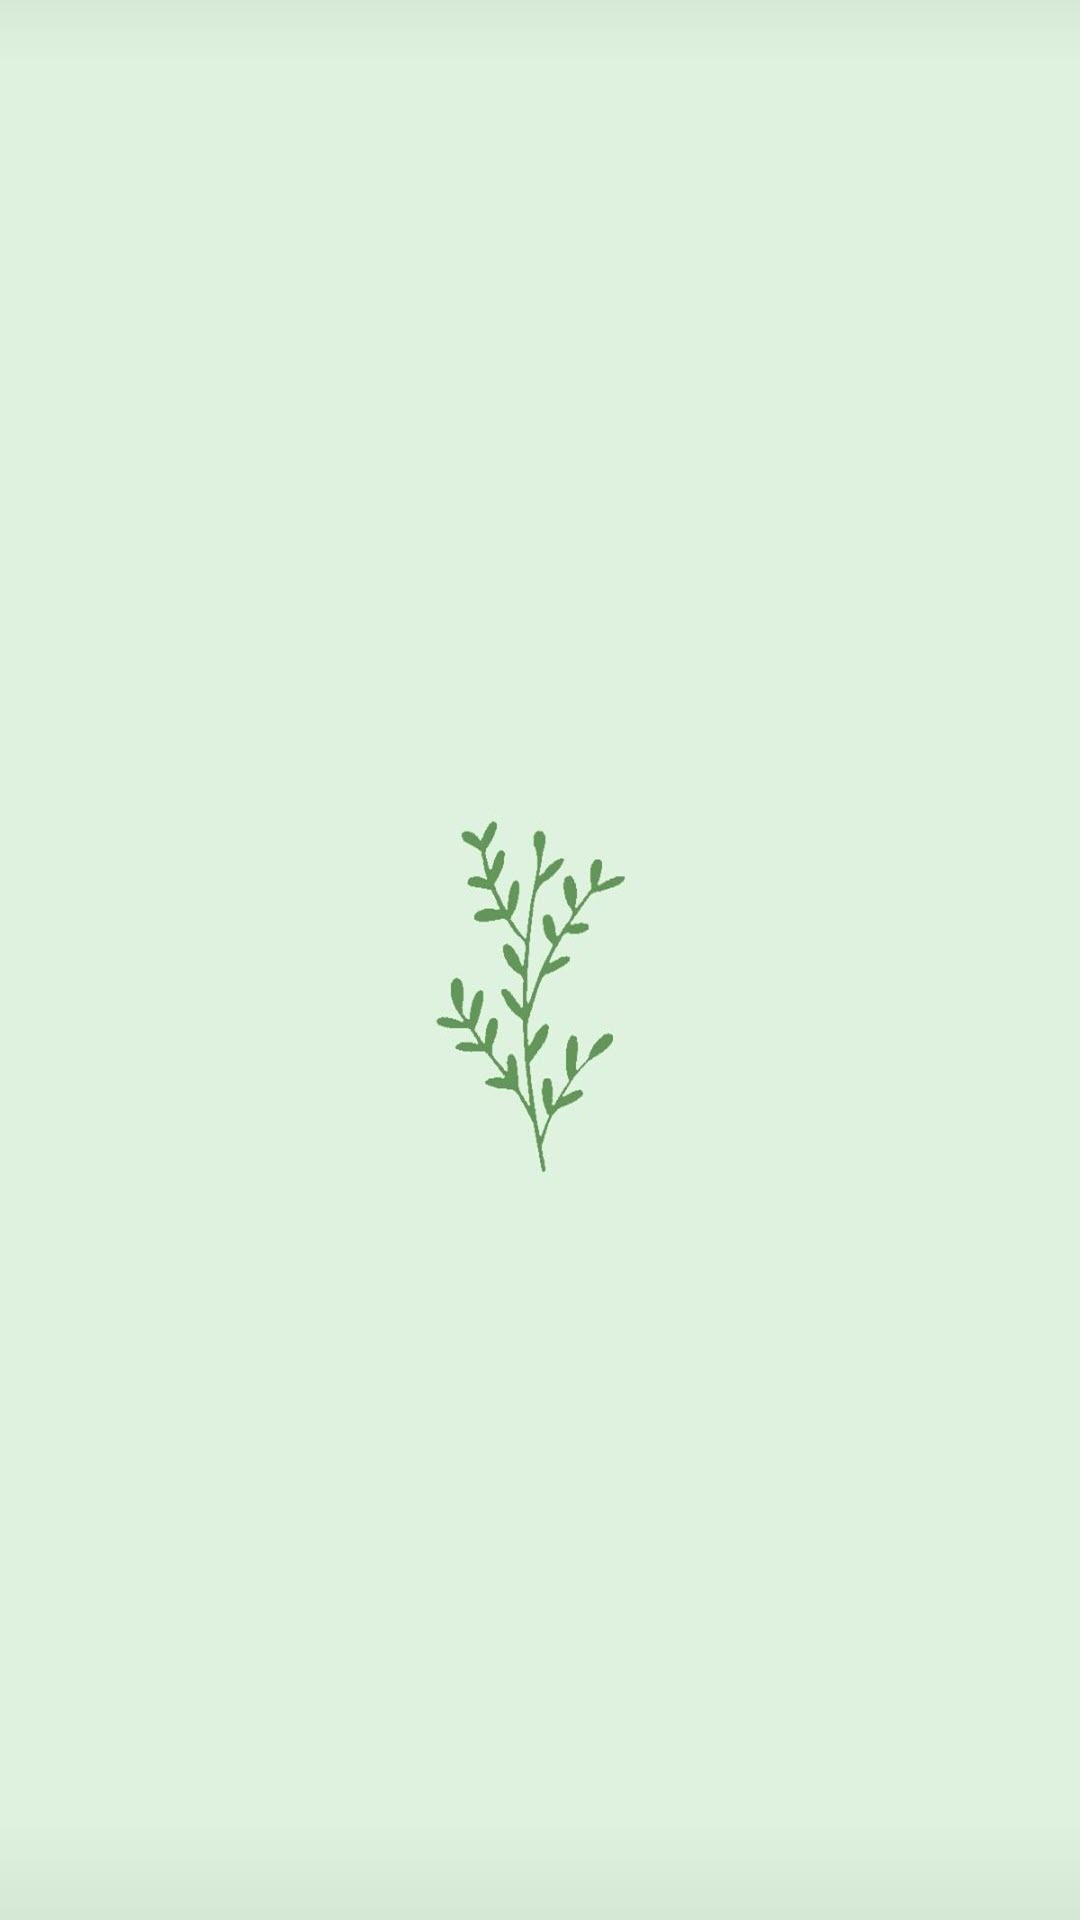 Hình Nền Nền Màu Xanh Lá Cây HD và Nền Cờ đẹp màu xanh lá cây tươi đơn  giản để Tải Xuống Miễn Phí  Lovepik